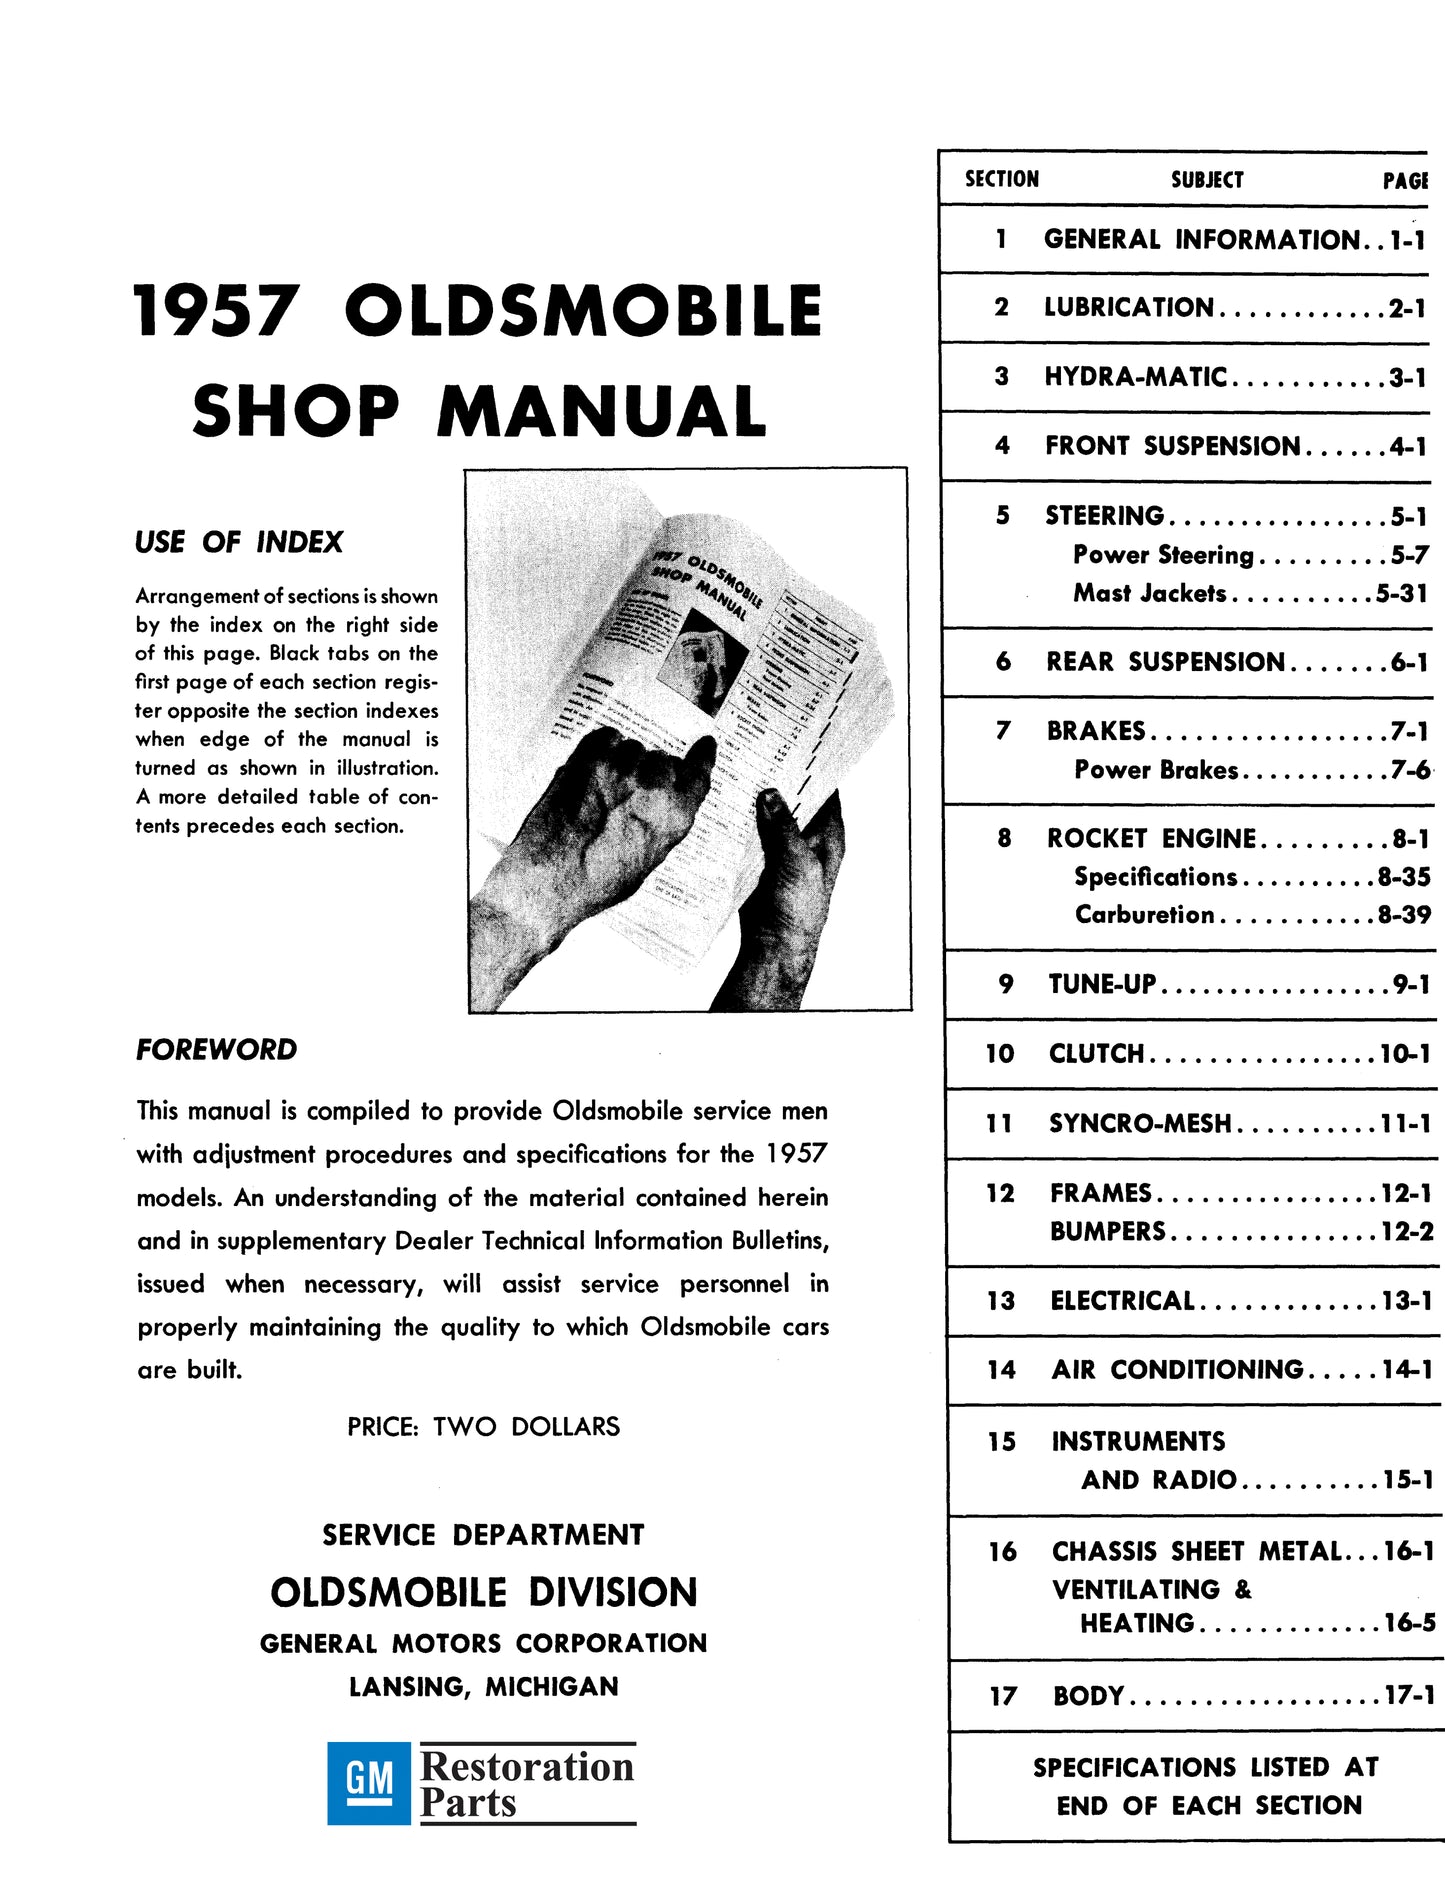 1957 Oldsmobile Shop Manual- All Models